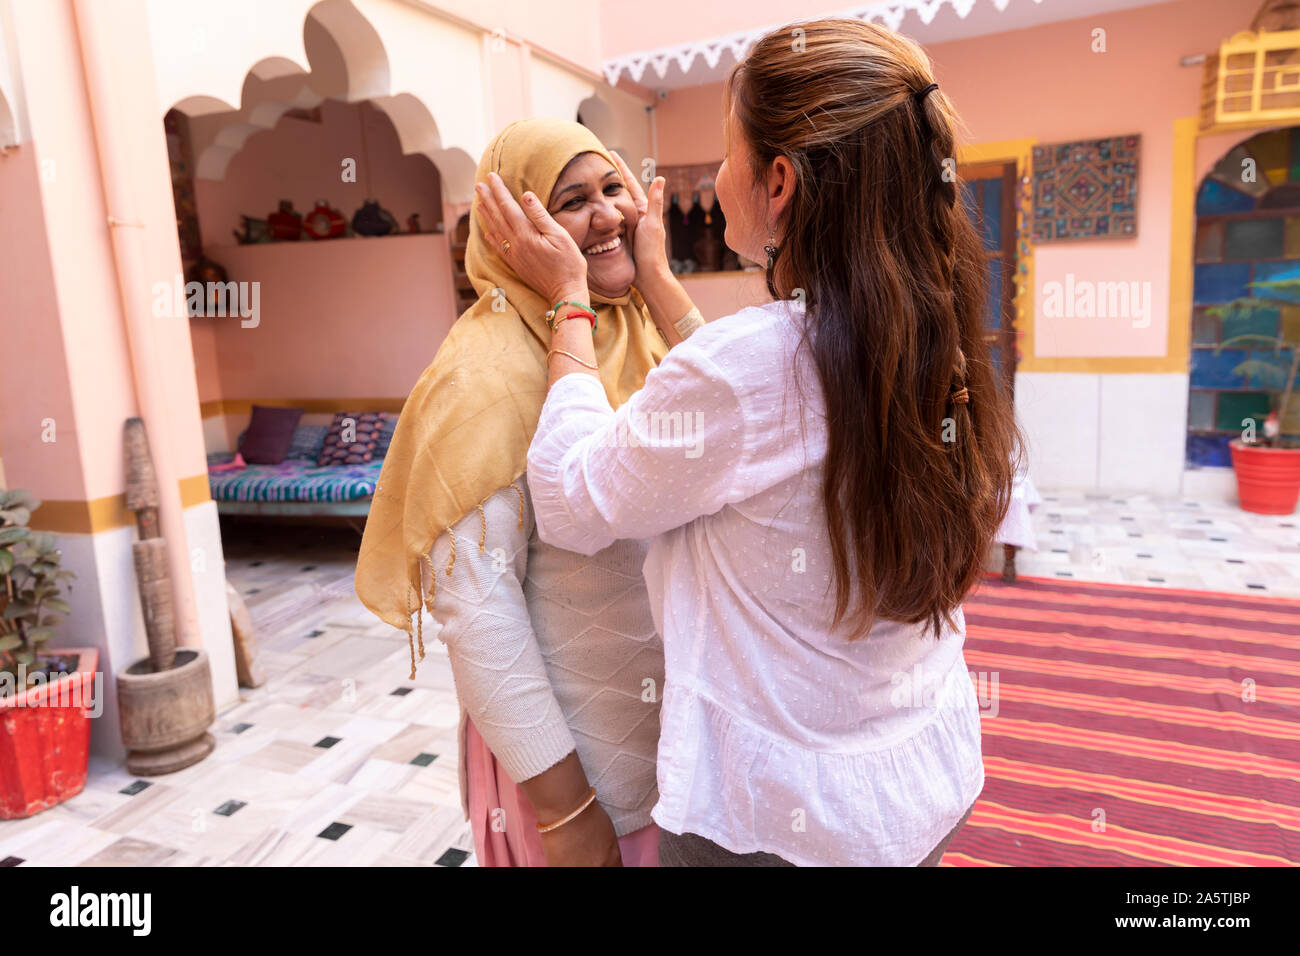 Eine westliche Frau cups ihre Hände um eine indische Frau Lächeln im Gesicht. Stockfoto